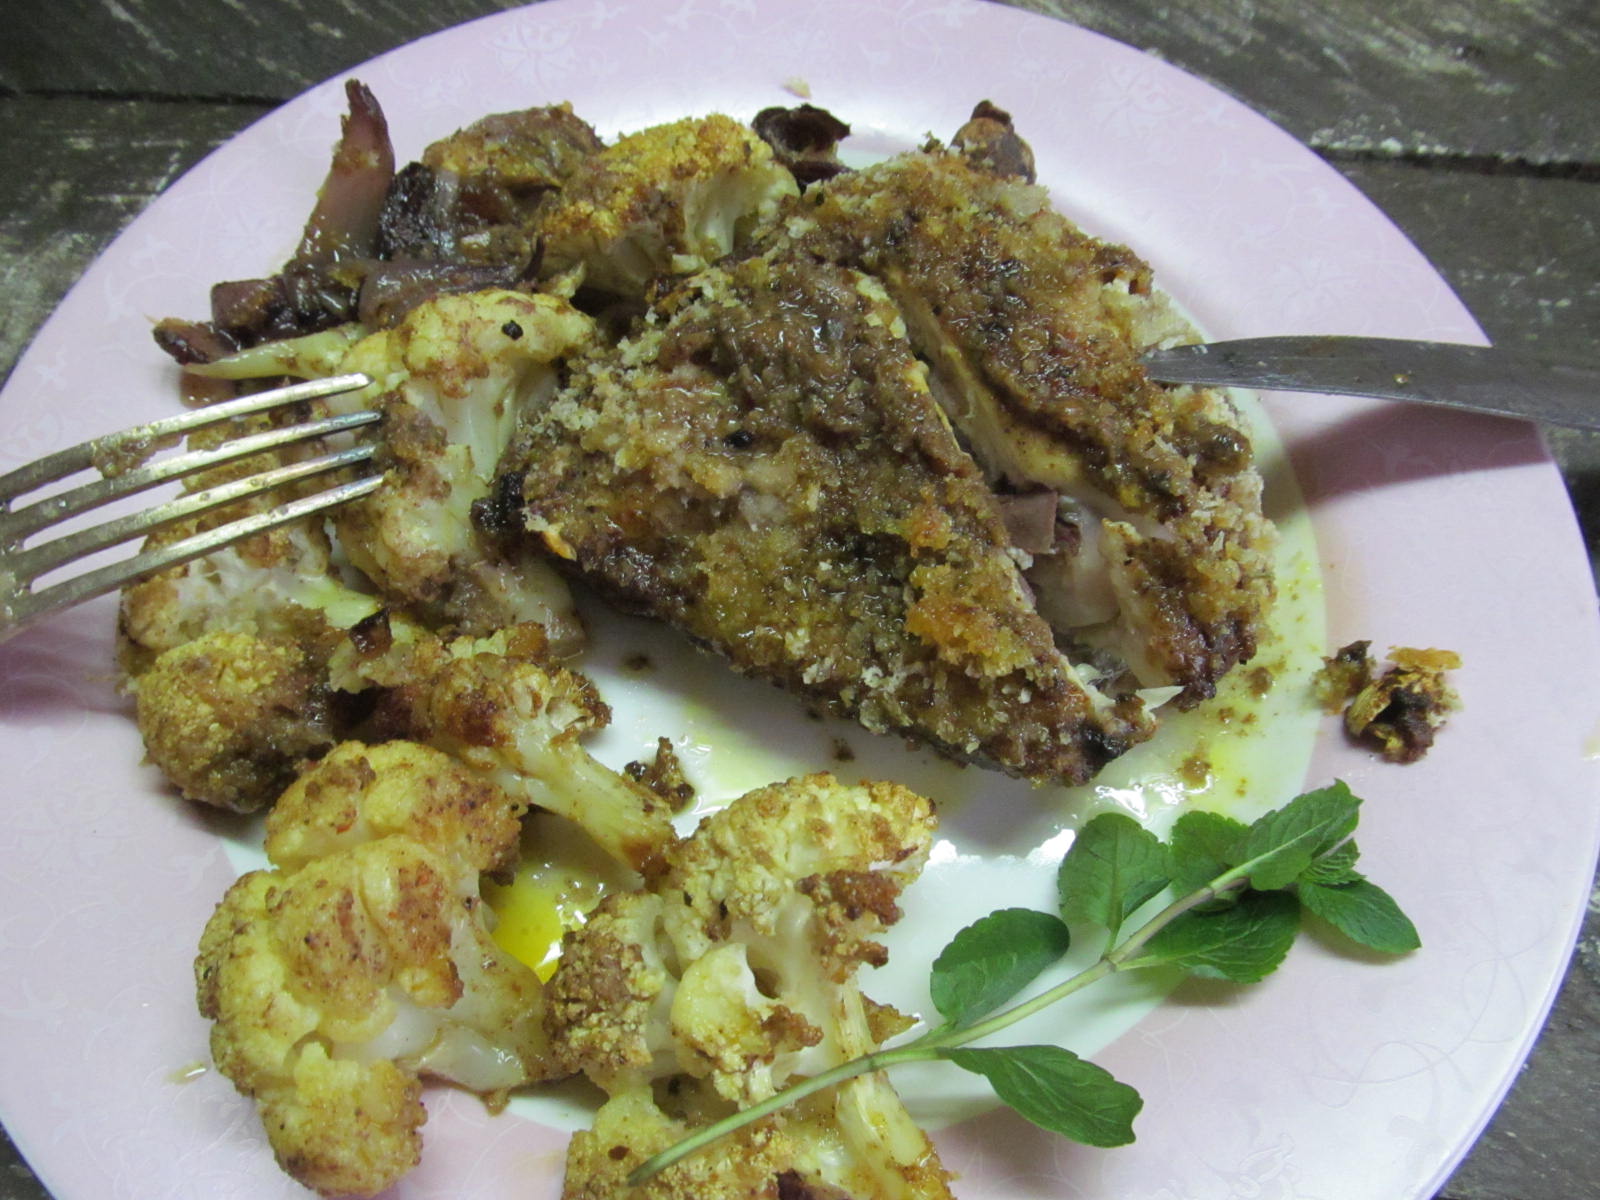 Индийская курица карри: 3 рецепта из Индии